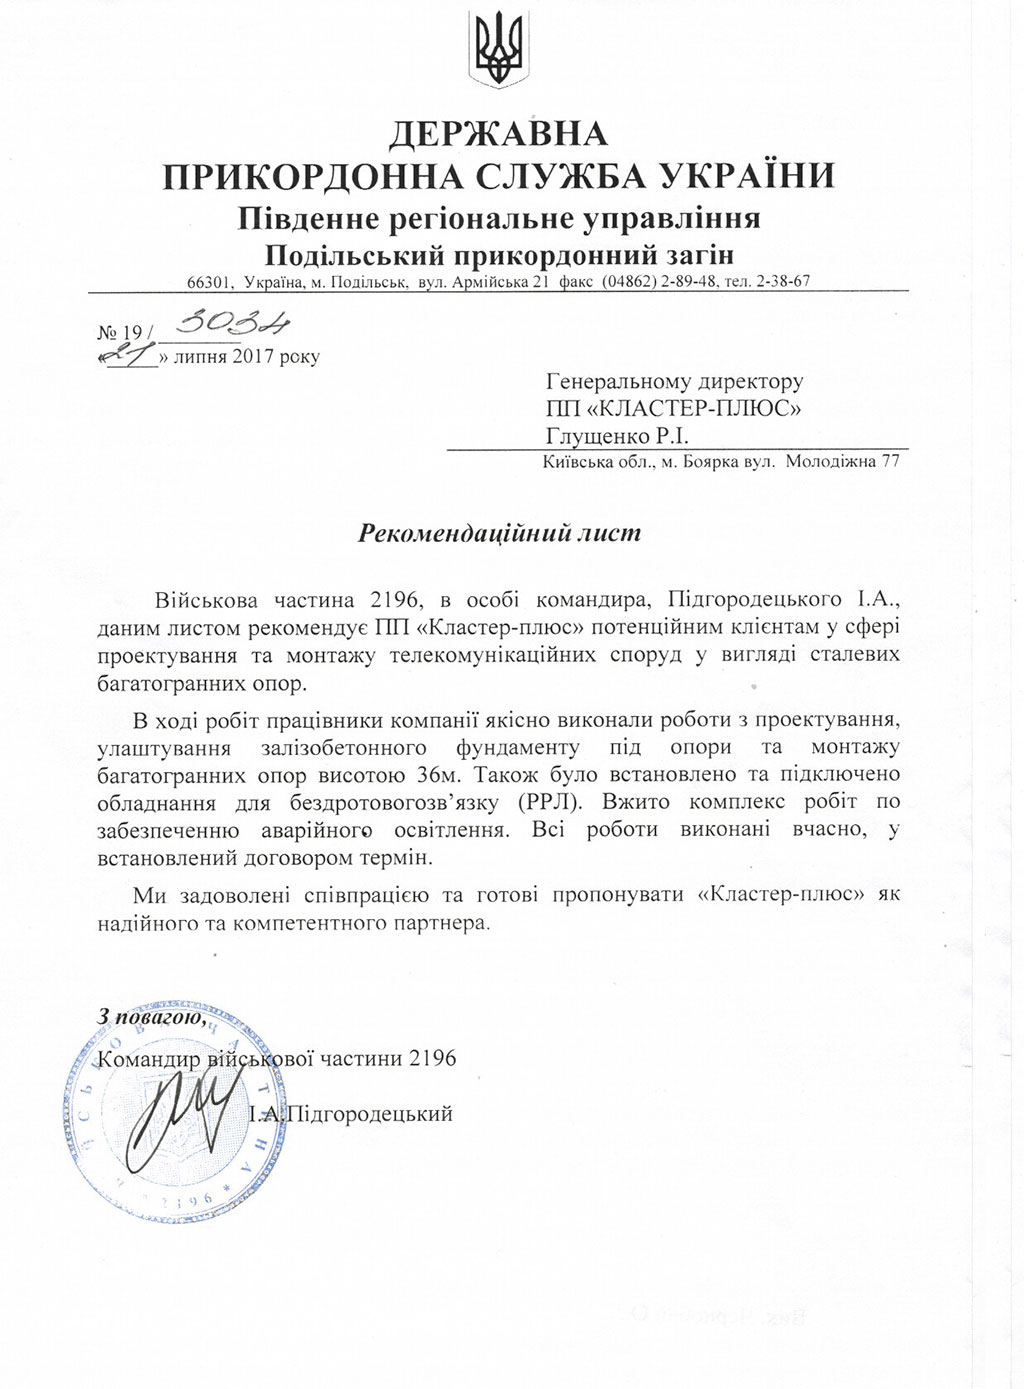 Рекомендательное письмо ГПС Украины ВЧ №2196